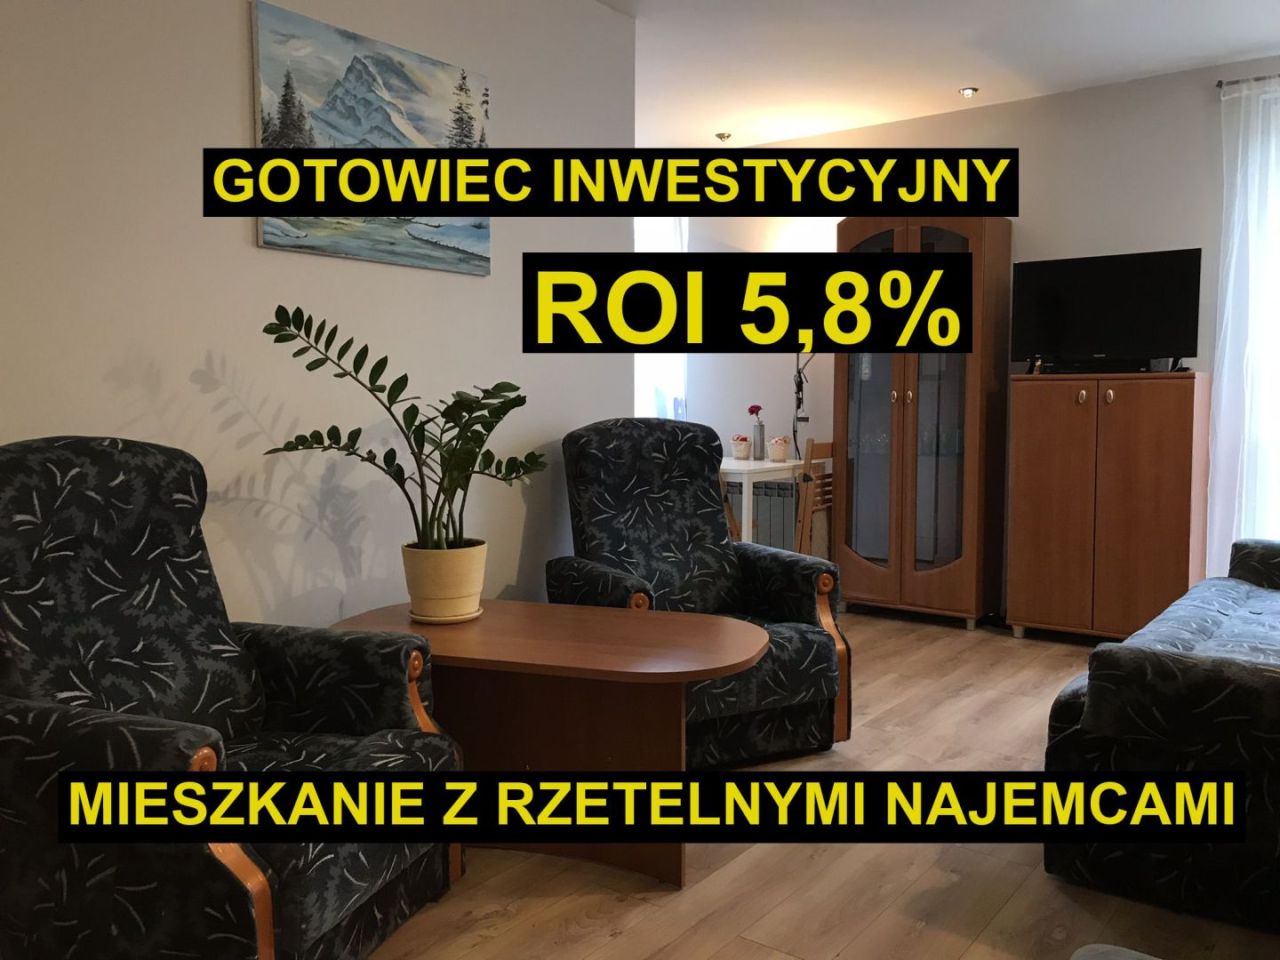 Mieszkanie w Gdyni - gotowiec inwestycyjny ROI 5,8%: zdjęcie 94117354